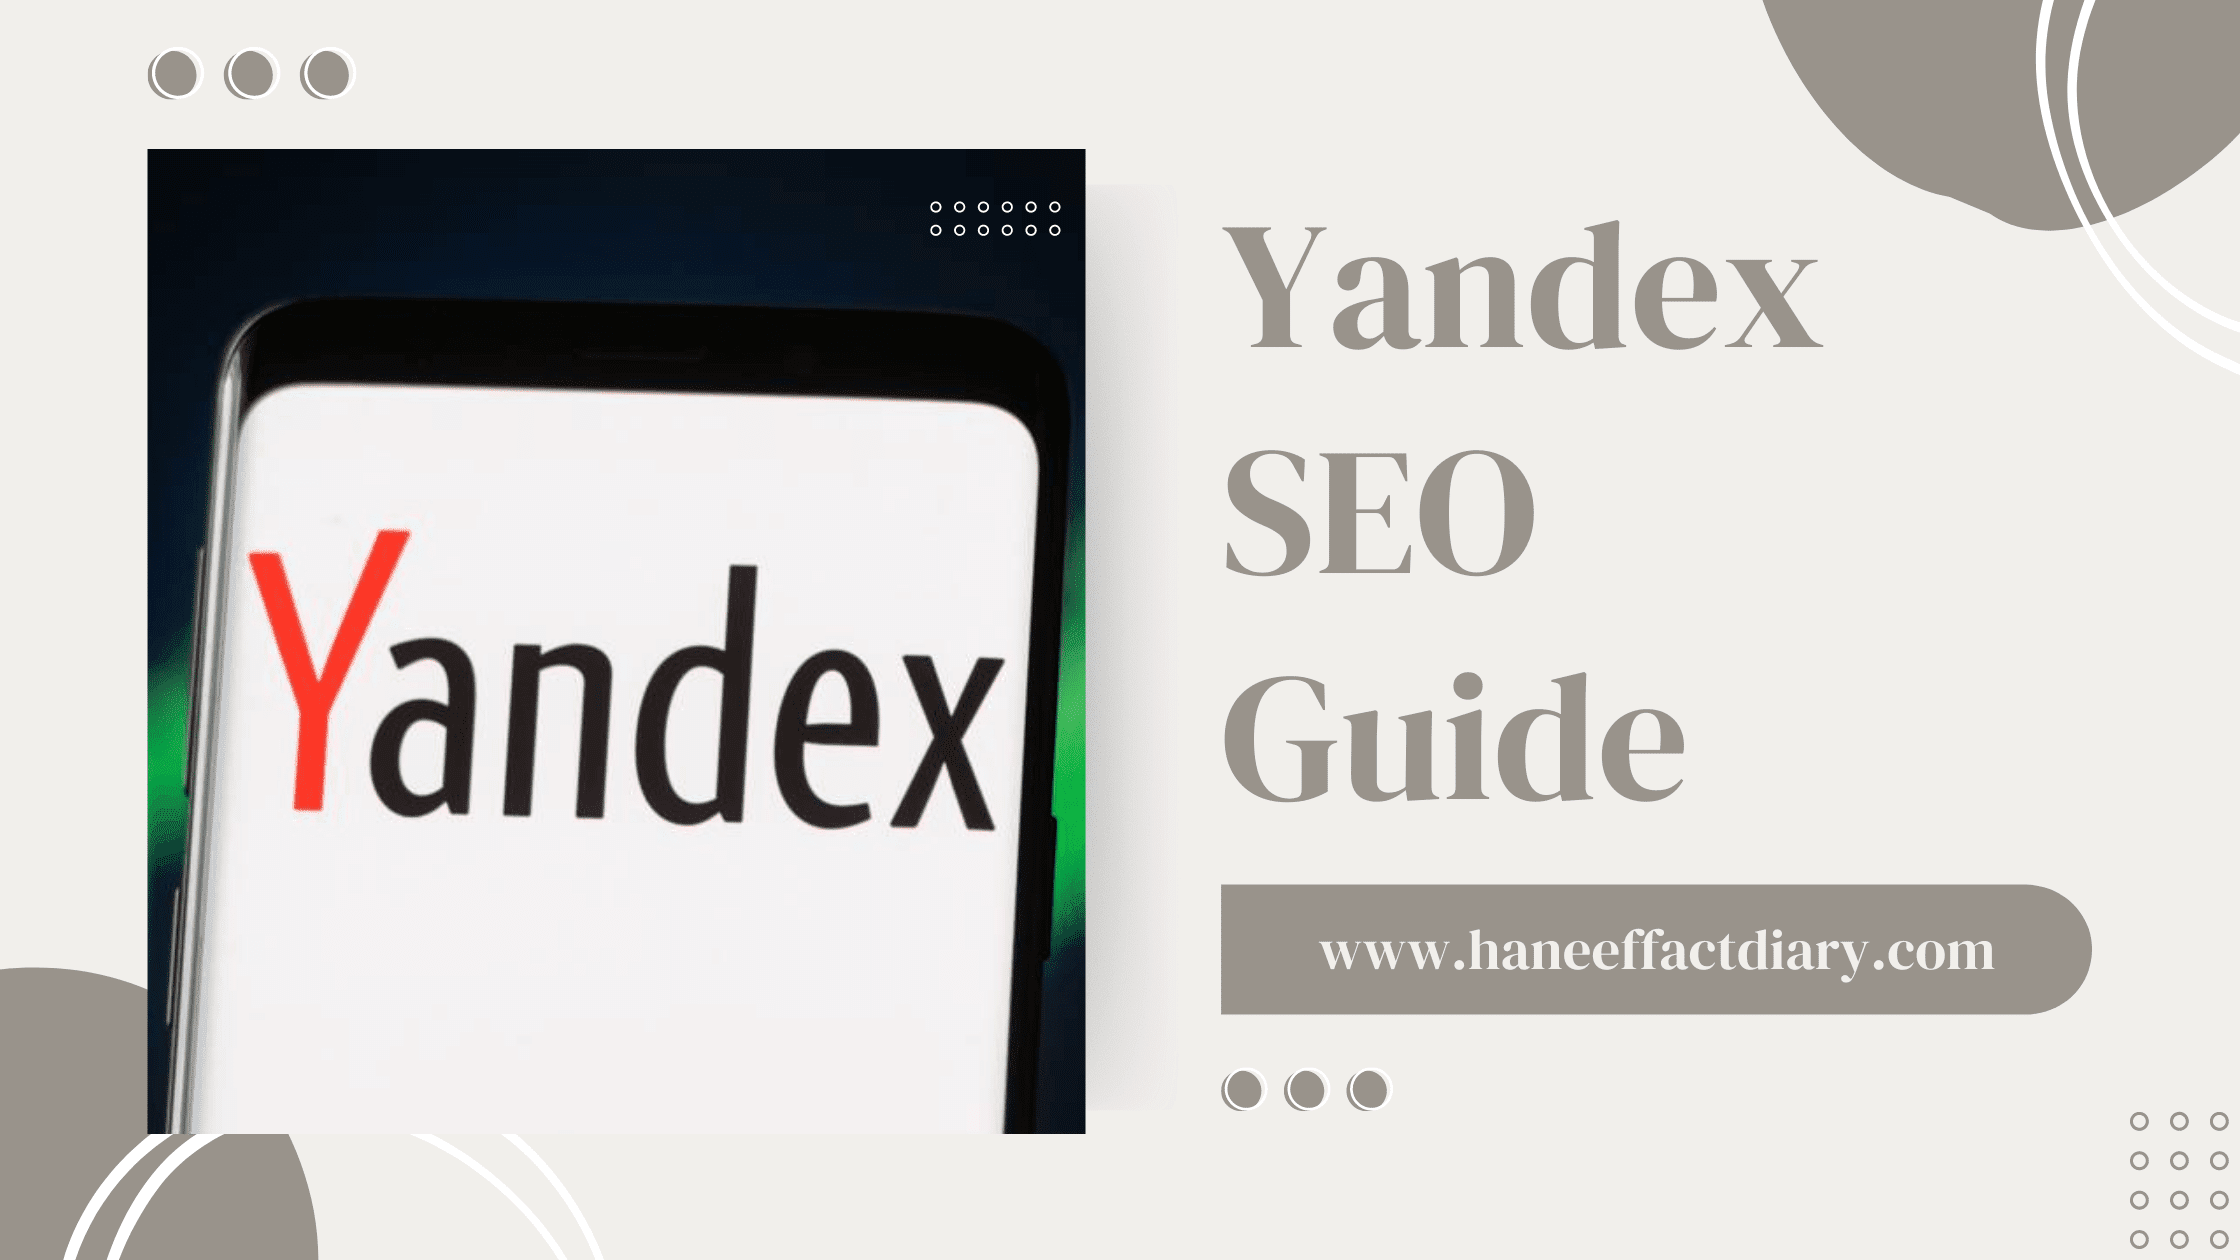 Yandex SEO Guide